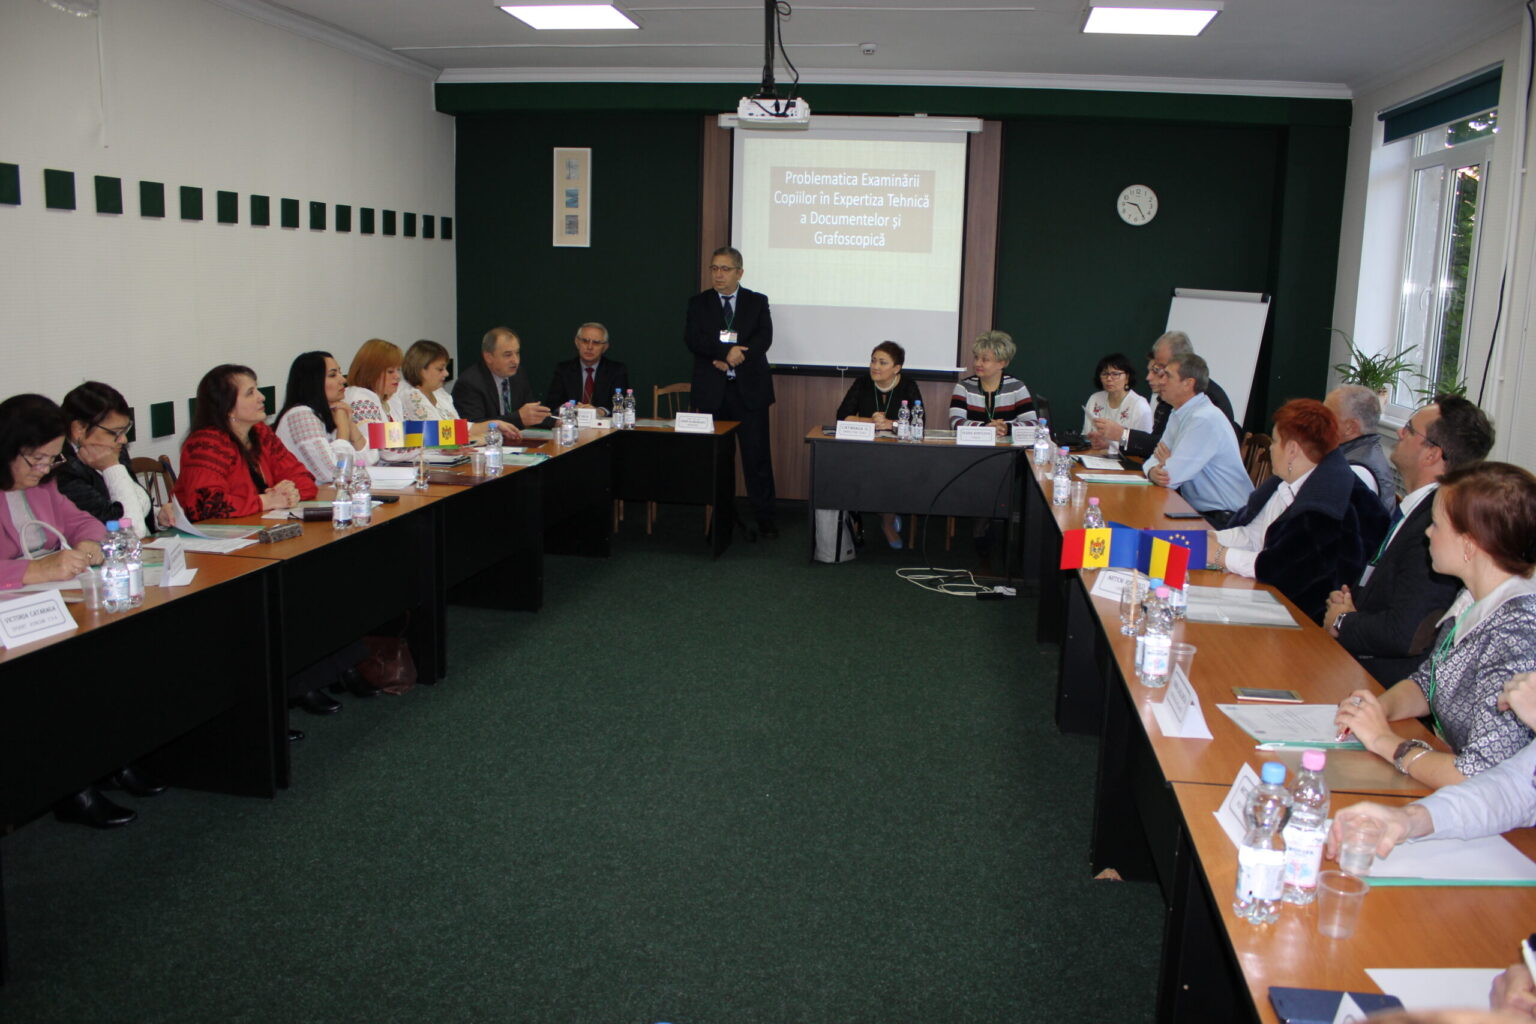 Експерти КНДІСЕ відвідали Республіку Молдову з метою участі в круглому столі з питань експертизи документів